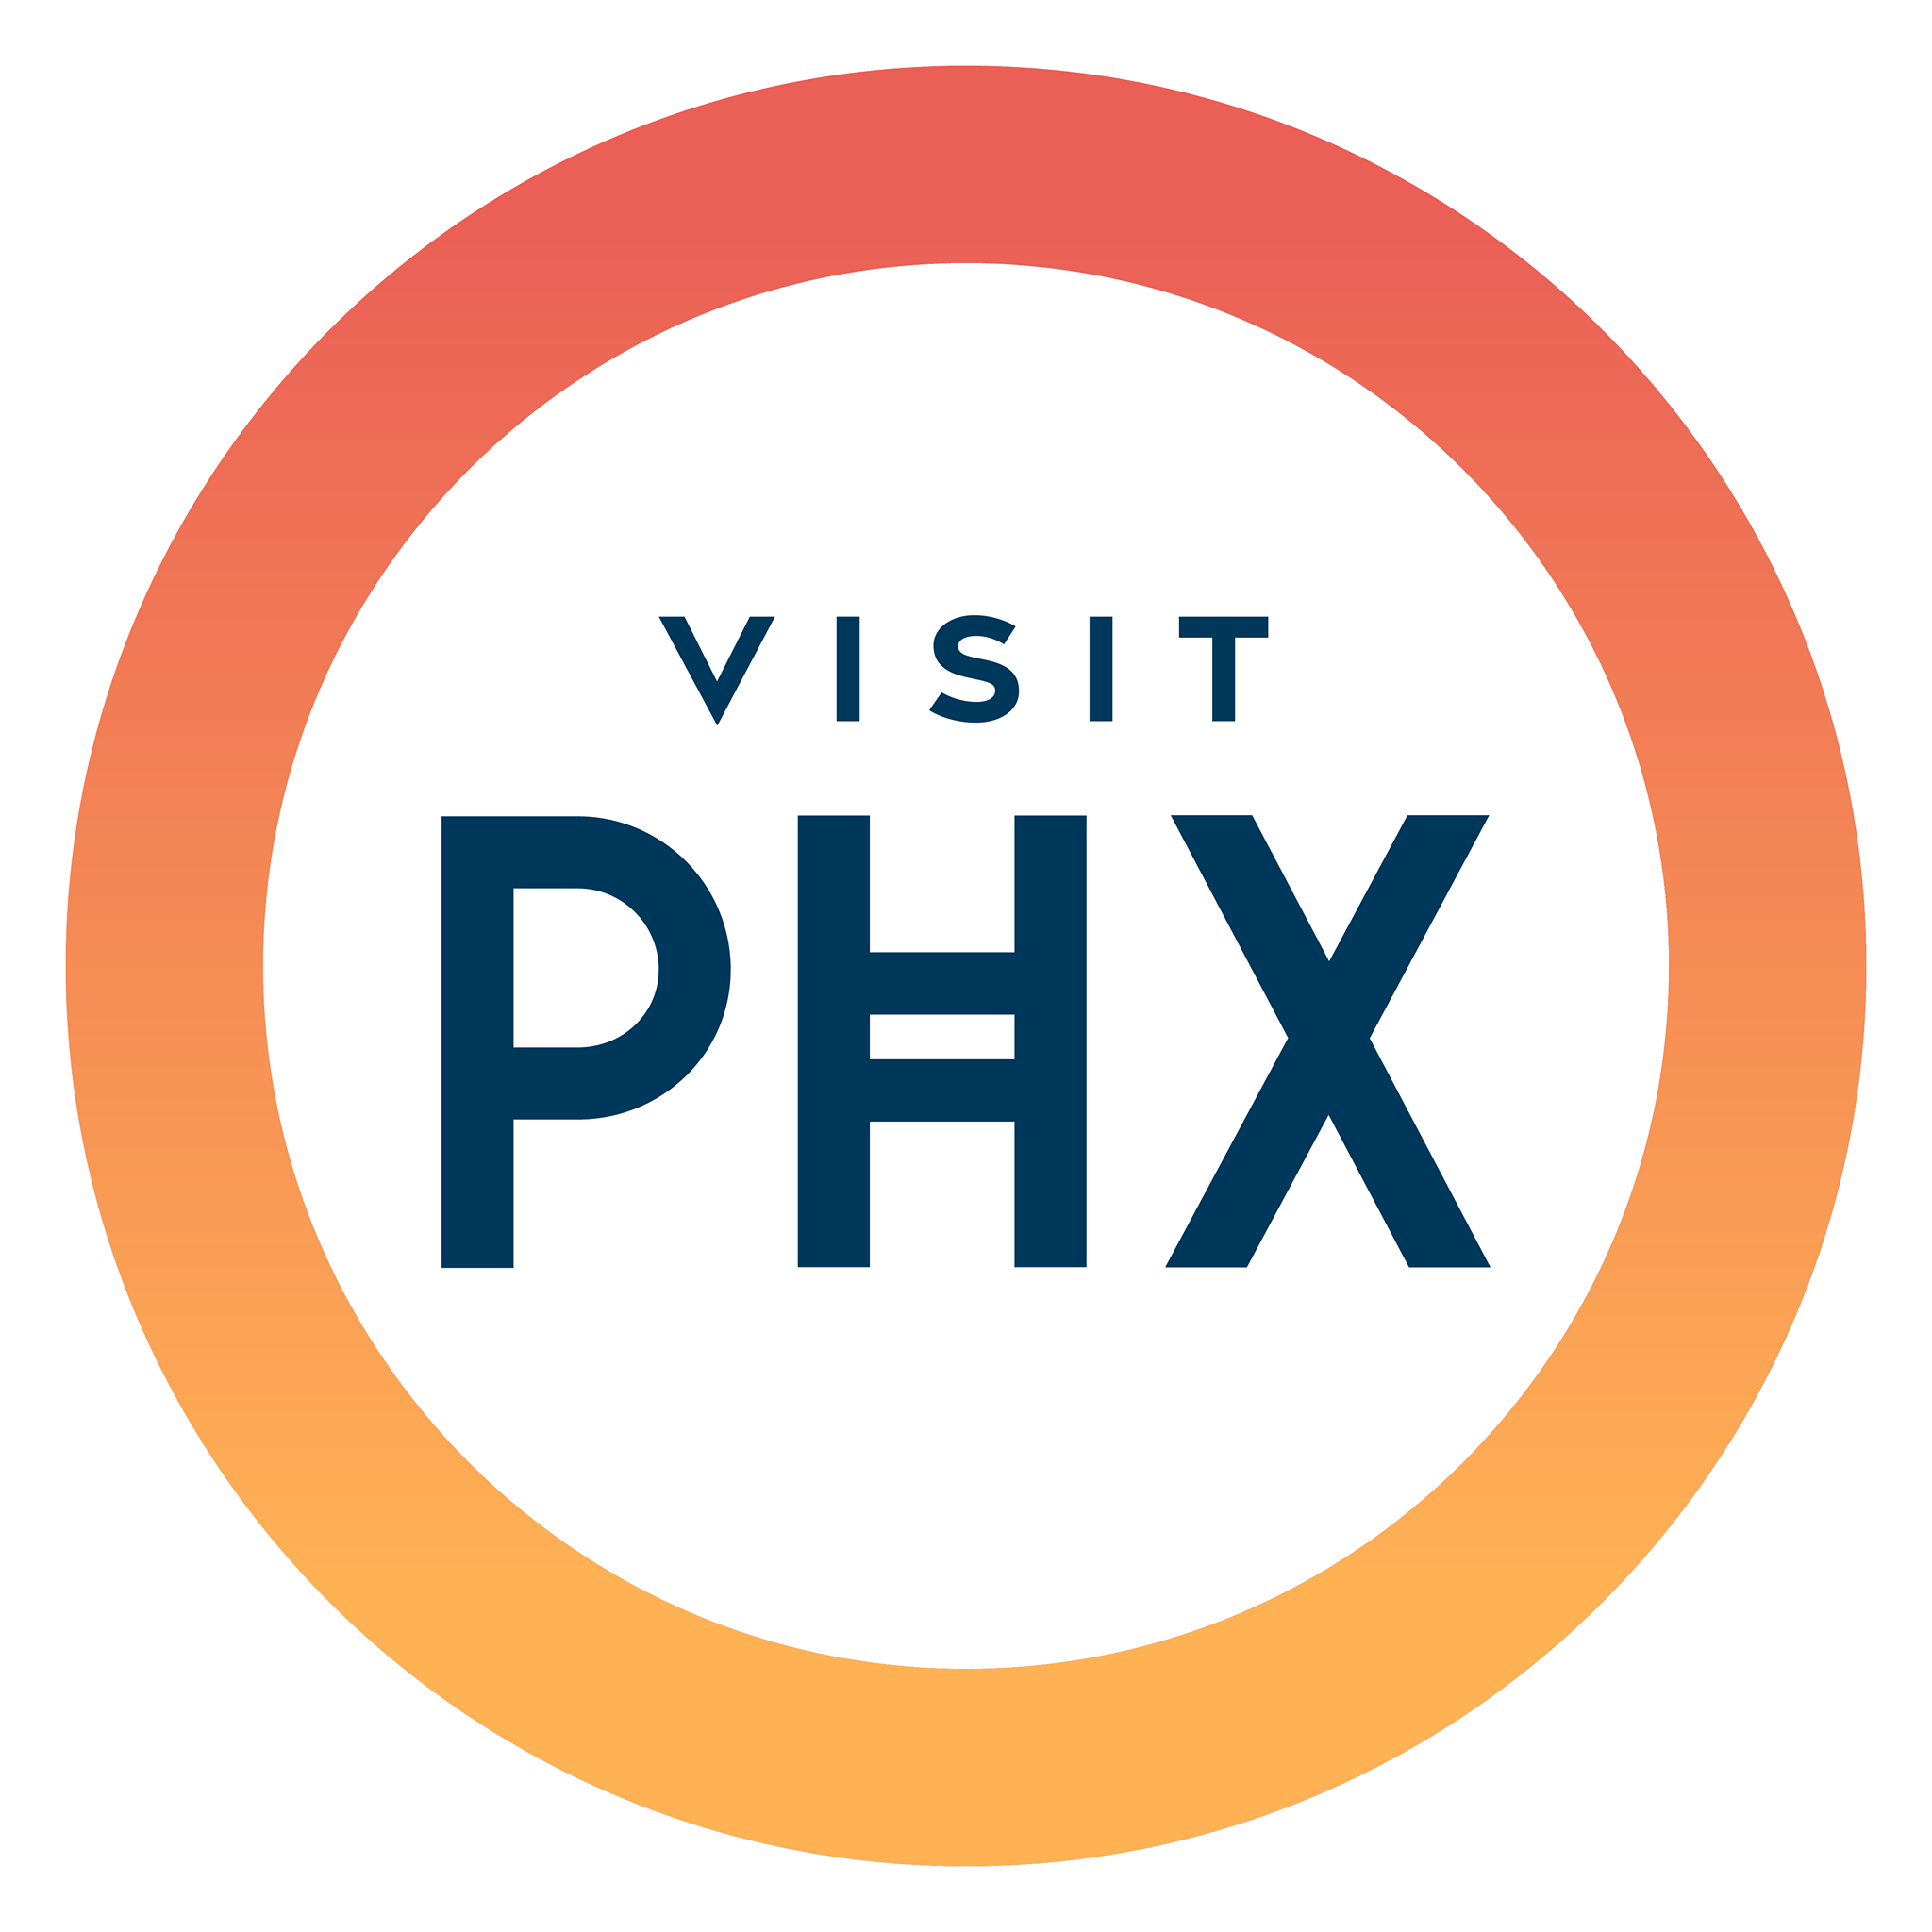 Greater Phoenix Convention & Visitors Bureau